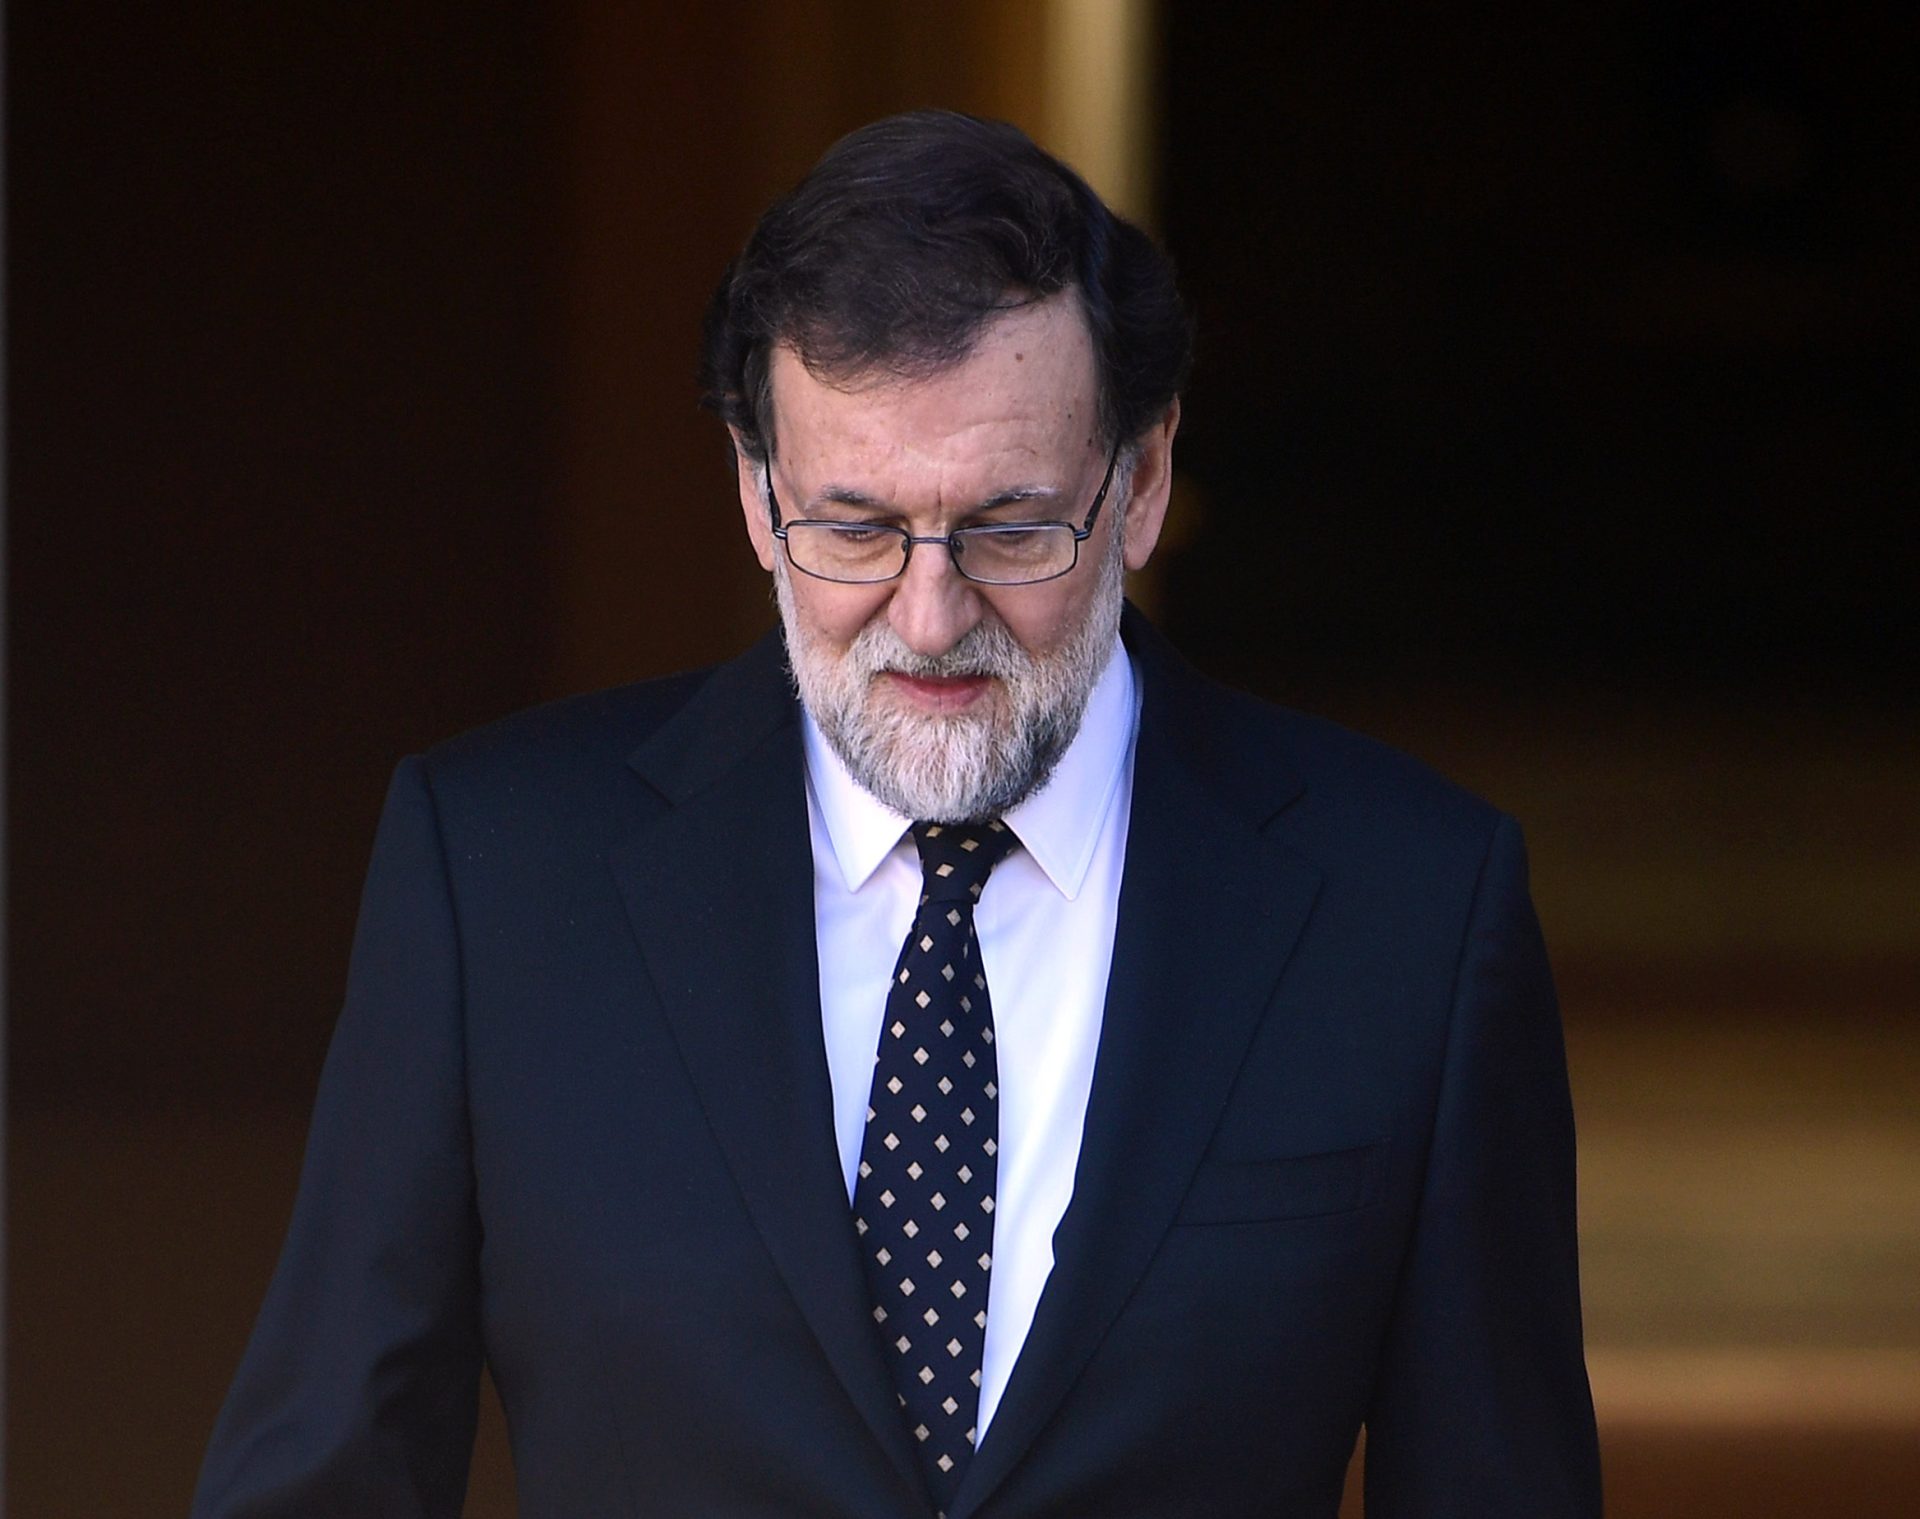 Espanha. PP em queda nas sondagens depois da condenação no caso Gürtel